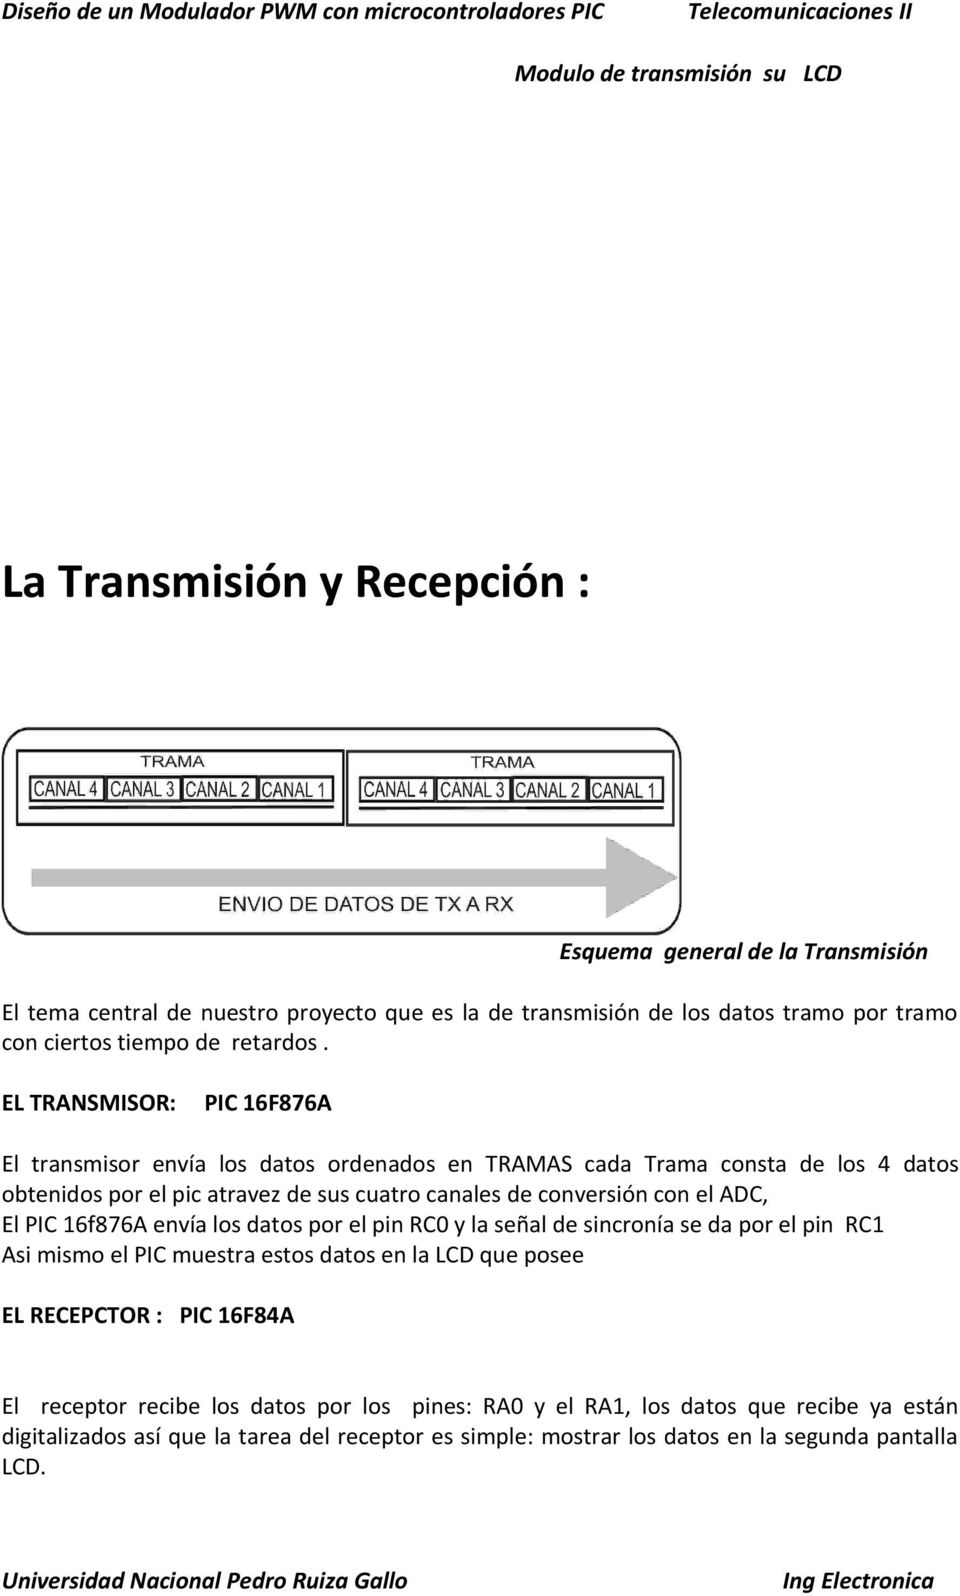 EL TRANSMISOR: PIC 16F876A El transmisor envía los datos ordenados en TRAMAS cada Trama consta de los 4 datos obtenidos por el pic atravez de sus cuatro canales de conversión con el ADC, El